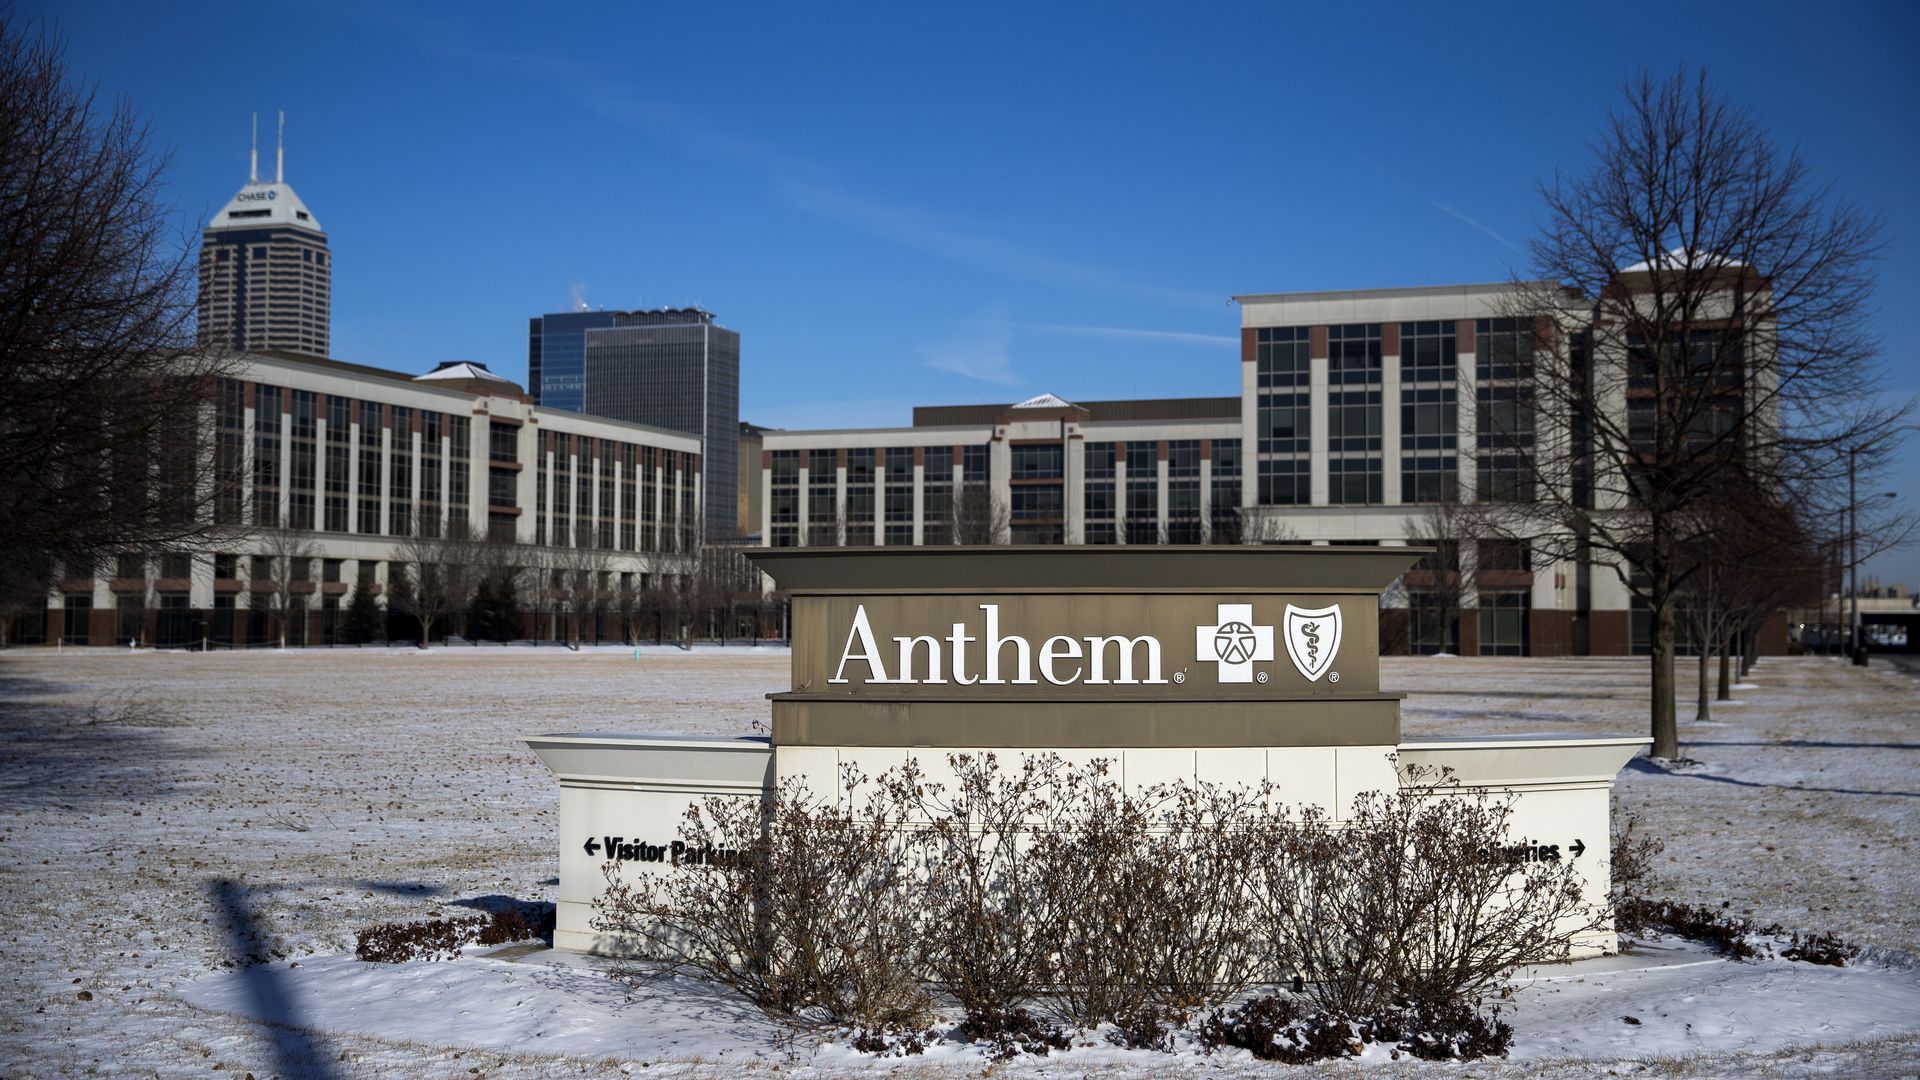 Anthem's headquarters in Indianapolis